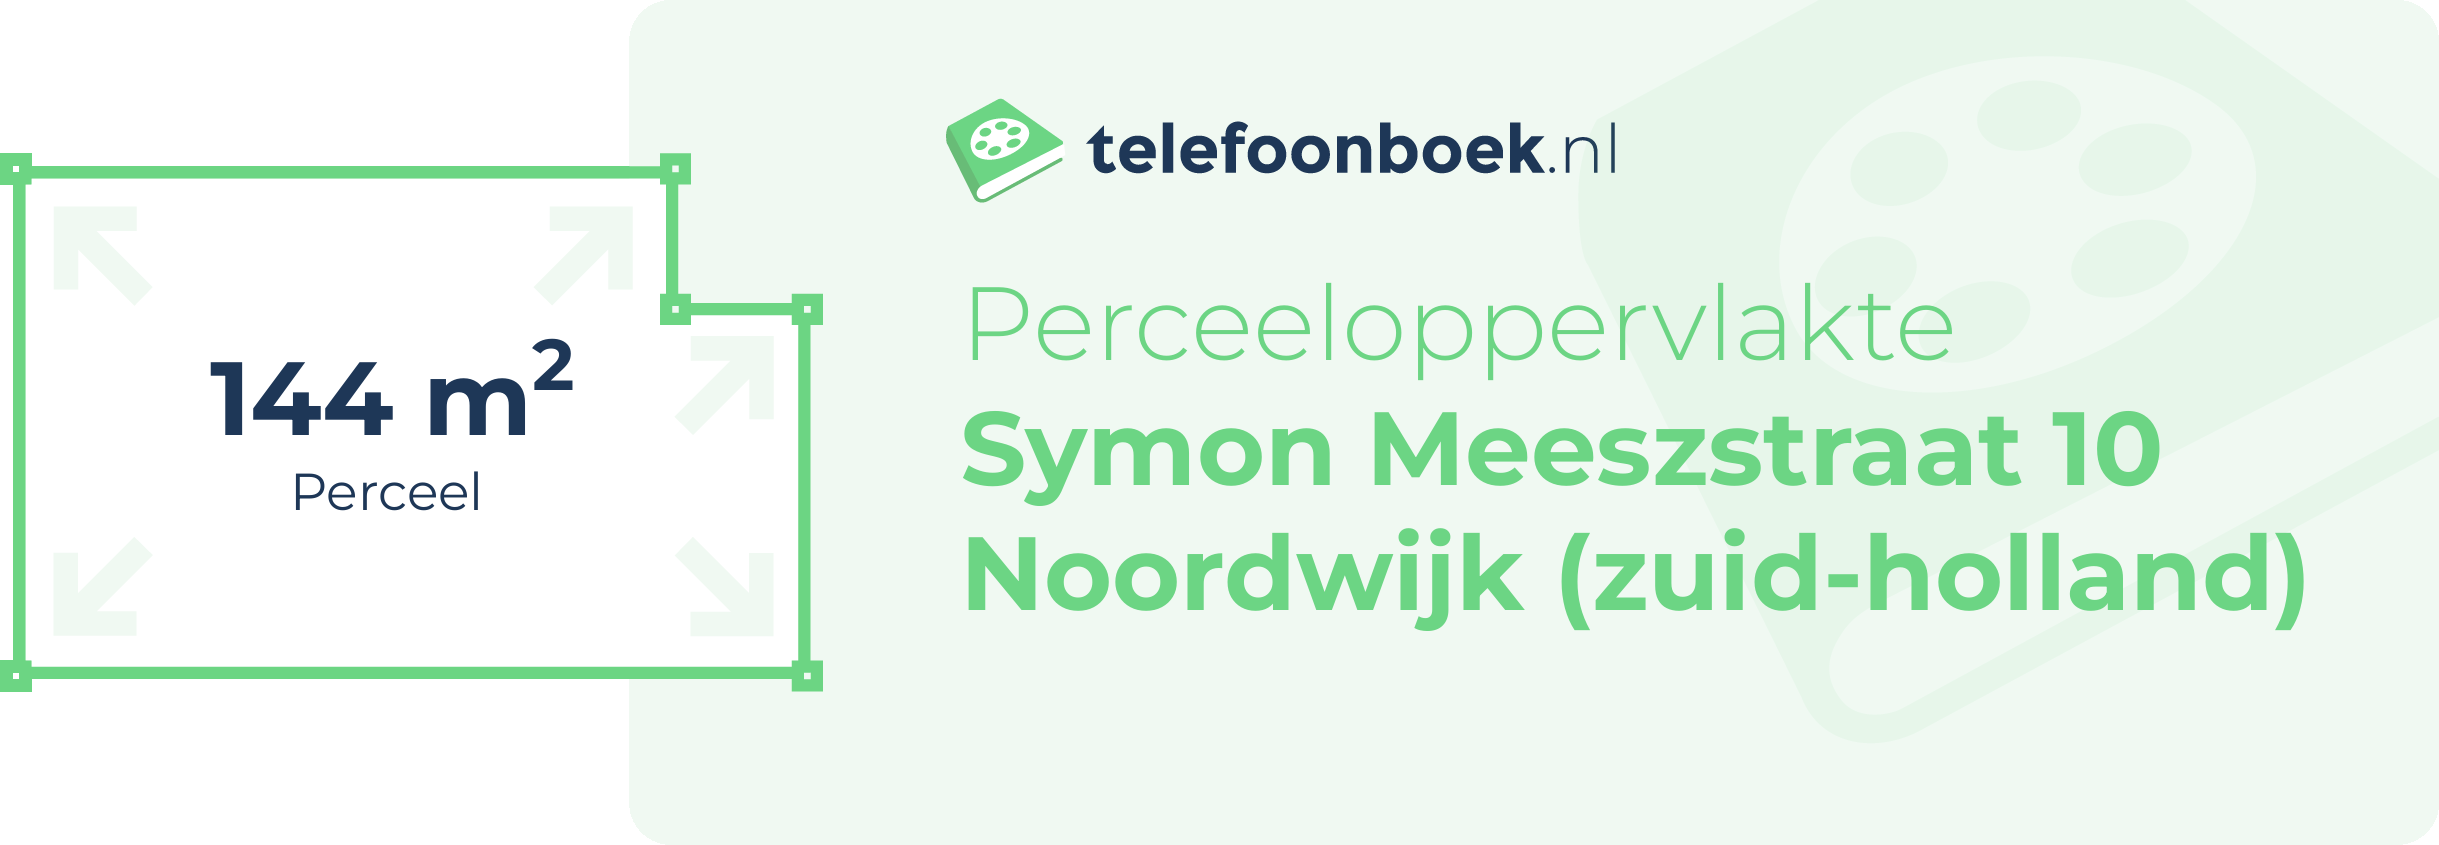 Perceeloppervlakte Symon Meeszstraat 10 Noordwijk (Zuid-Holland)